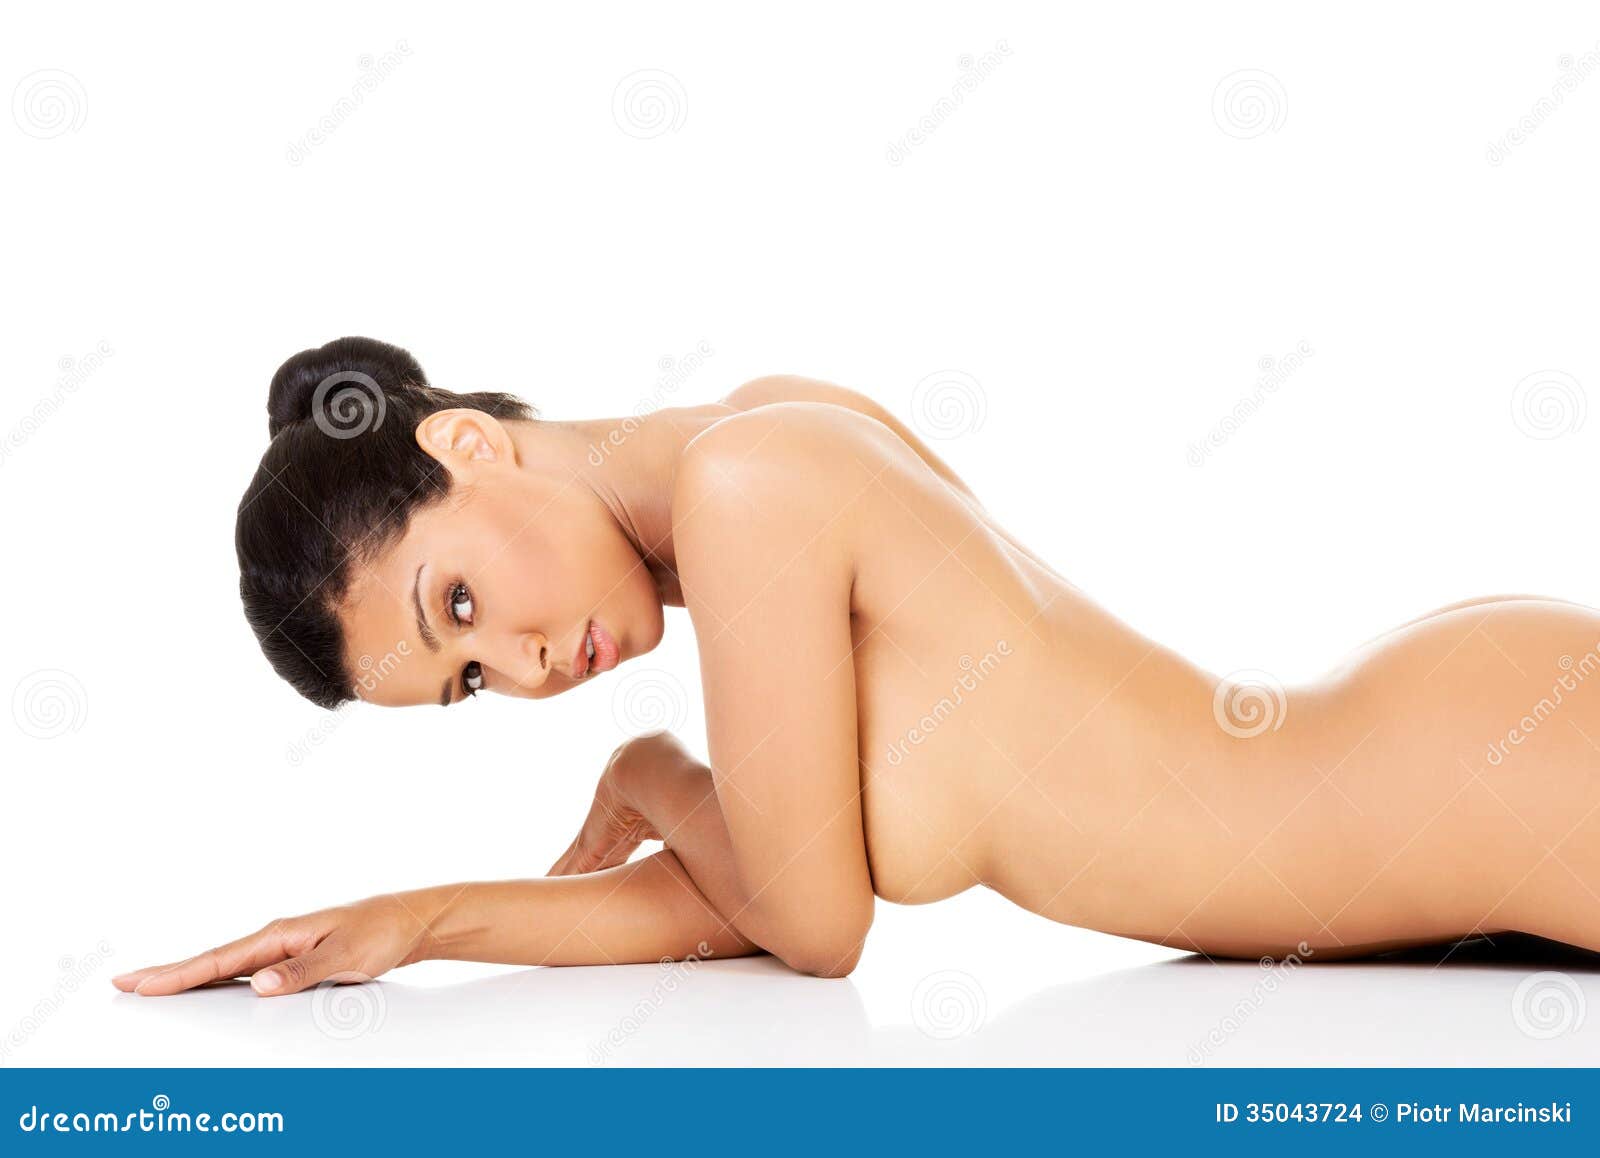 hot nude women laying down